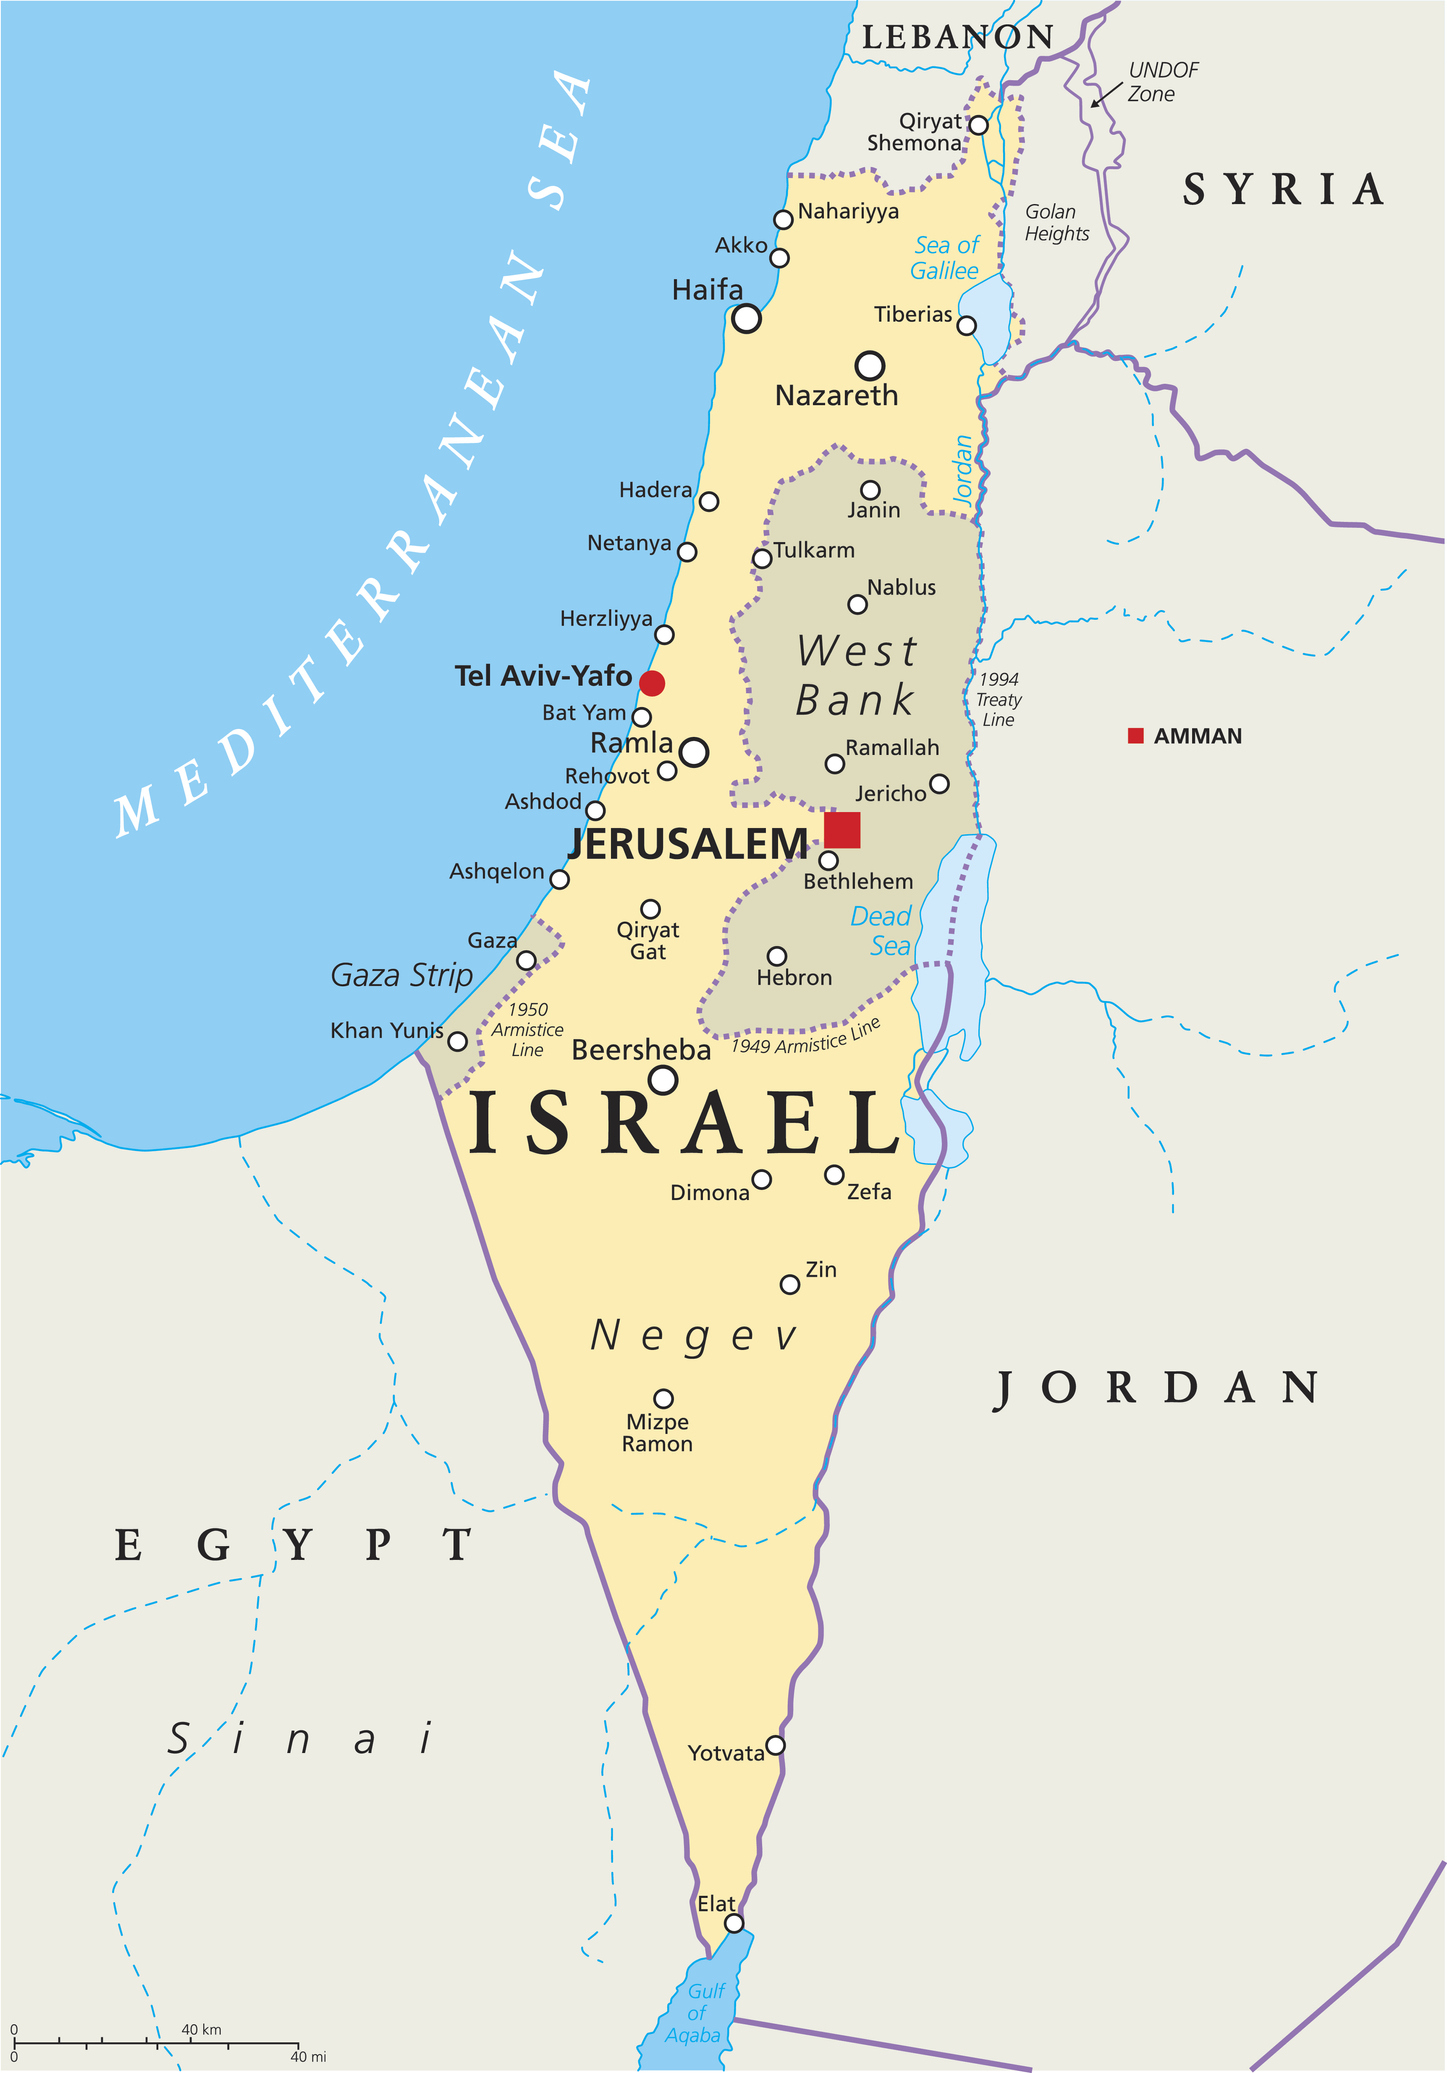 イスラエル周辺の地図。「ISRAERL」の文字の左上にある長細い部分がガザ地区